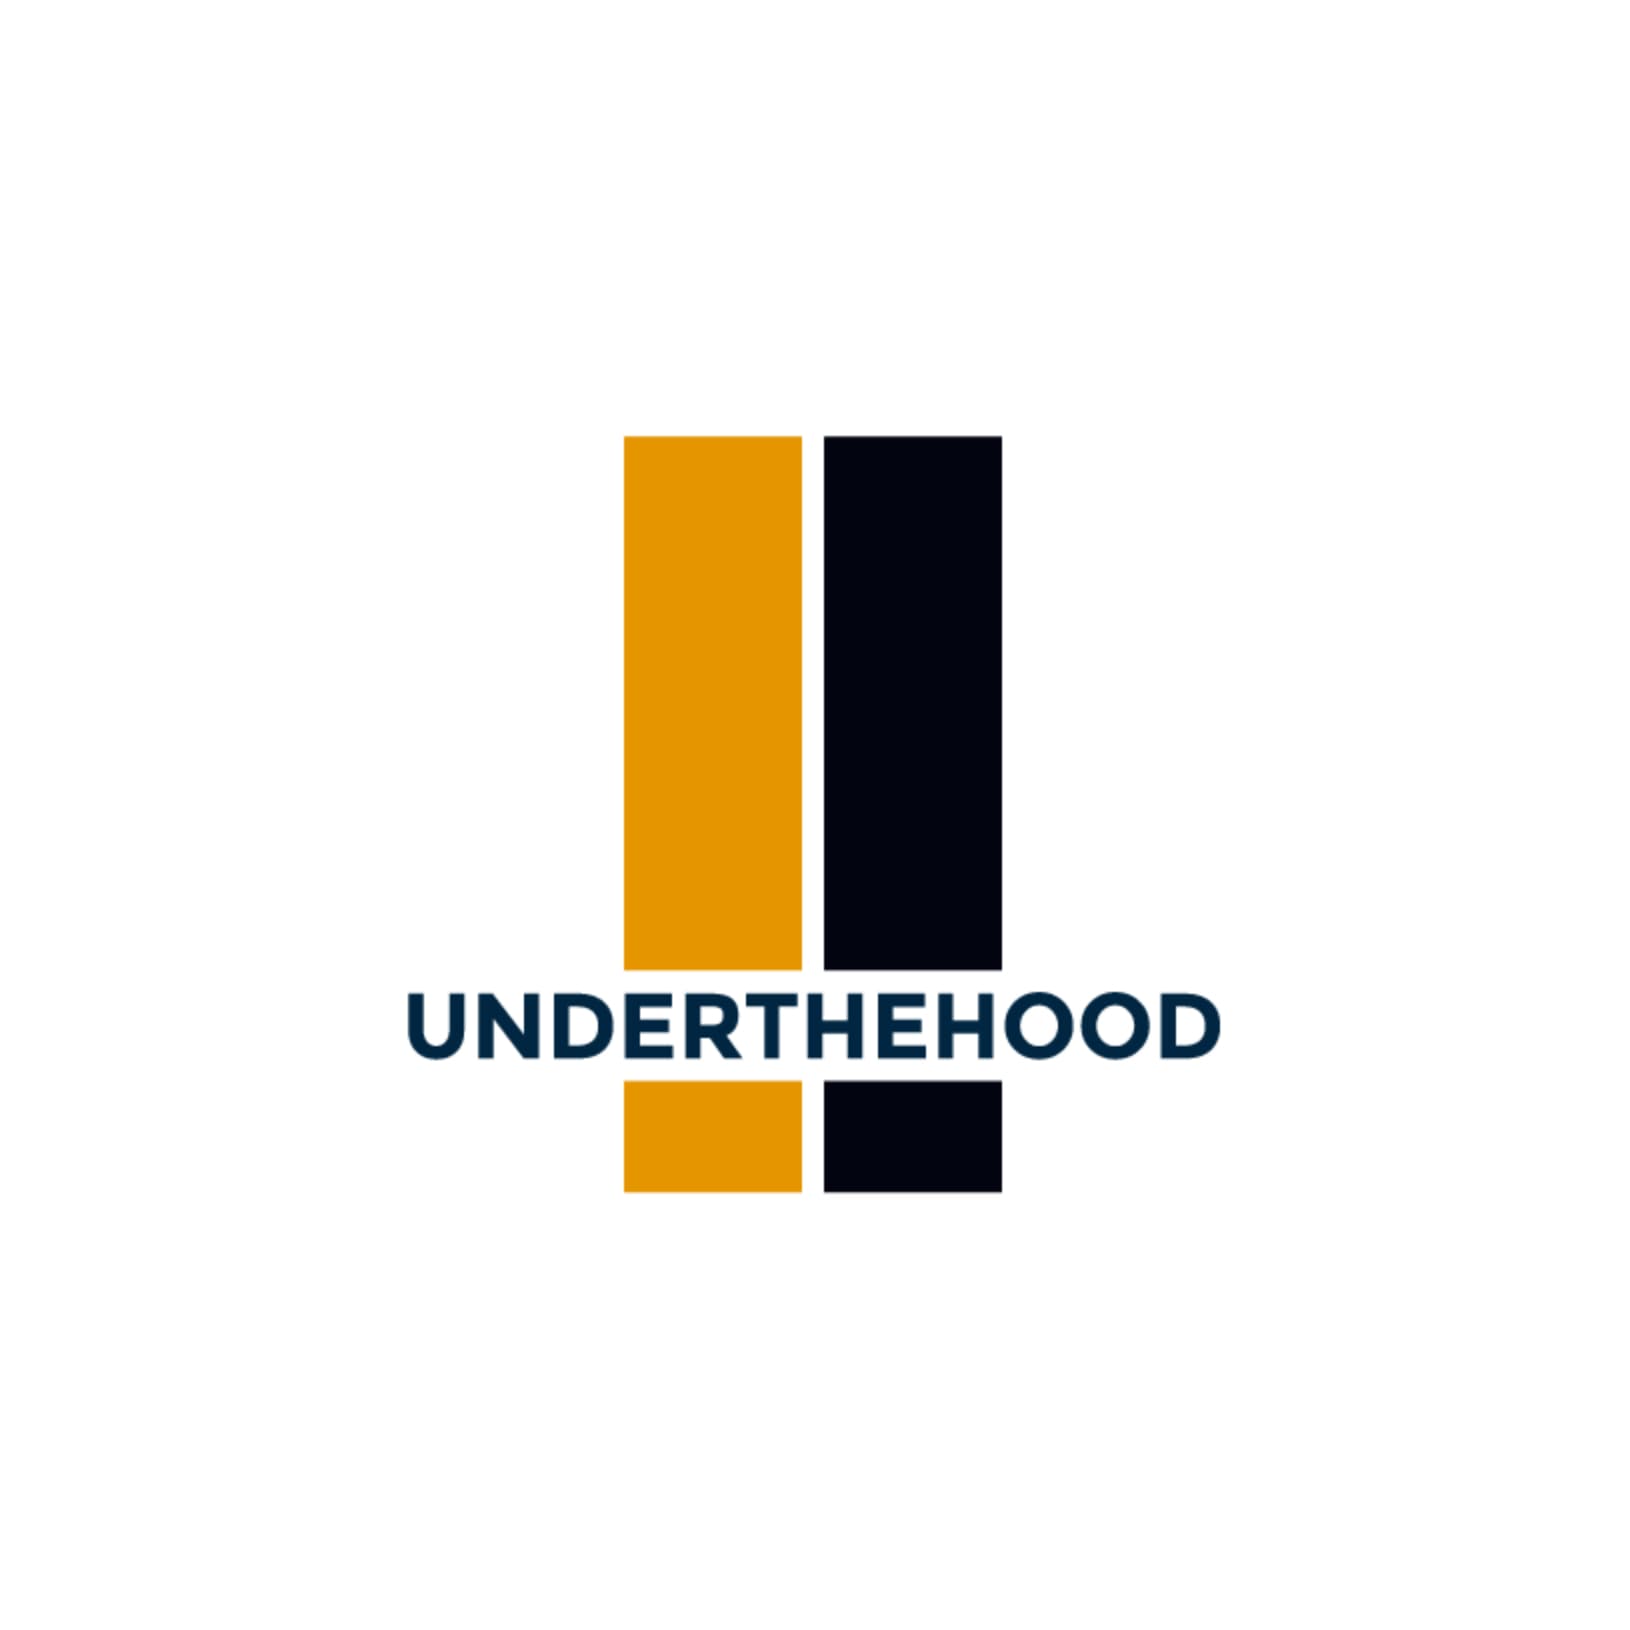 UNDERTHEHOOD's logo